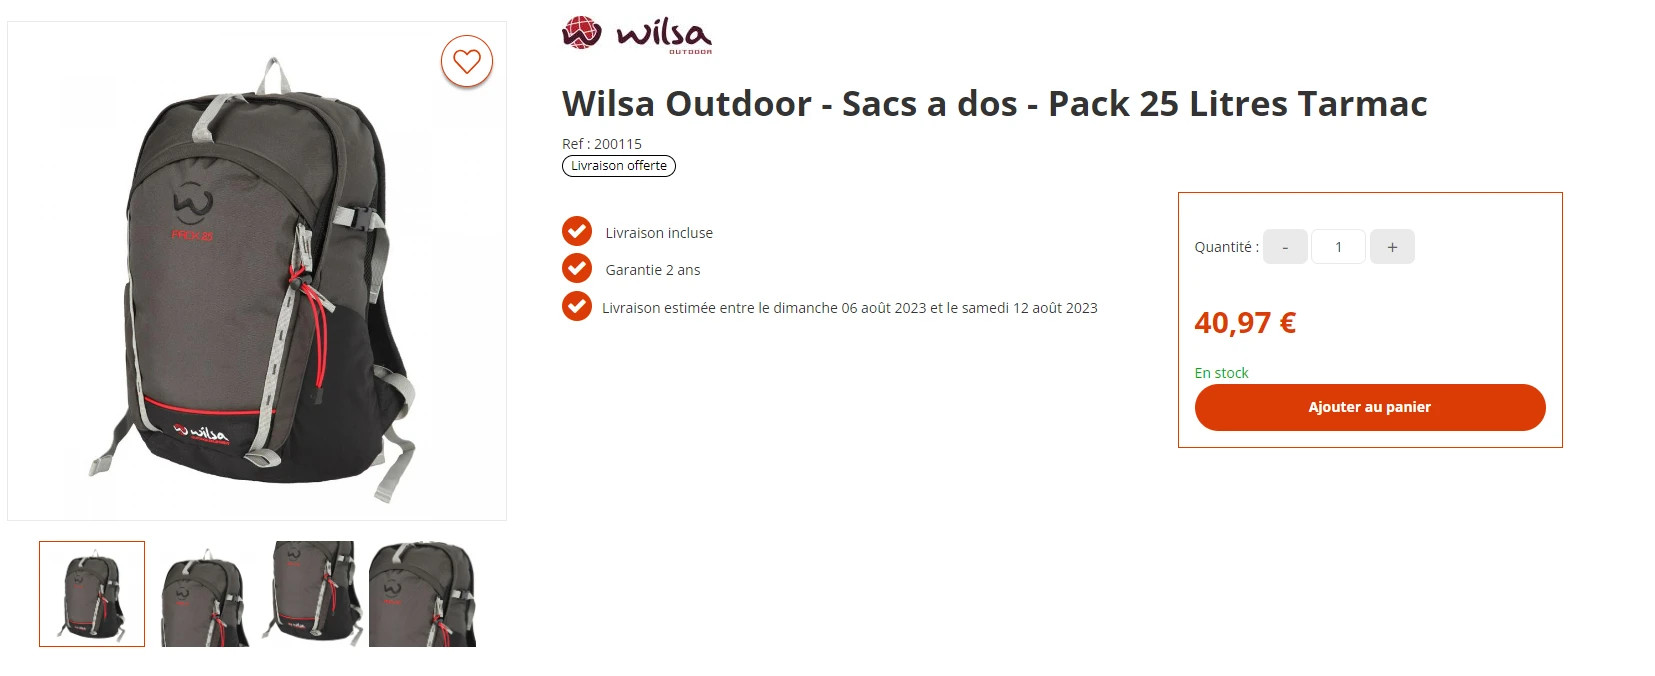 PACK 25 litres - Wilsa Outdoor